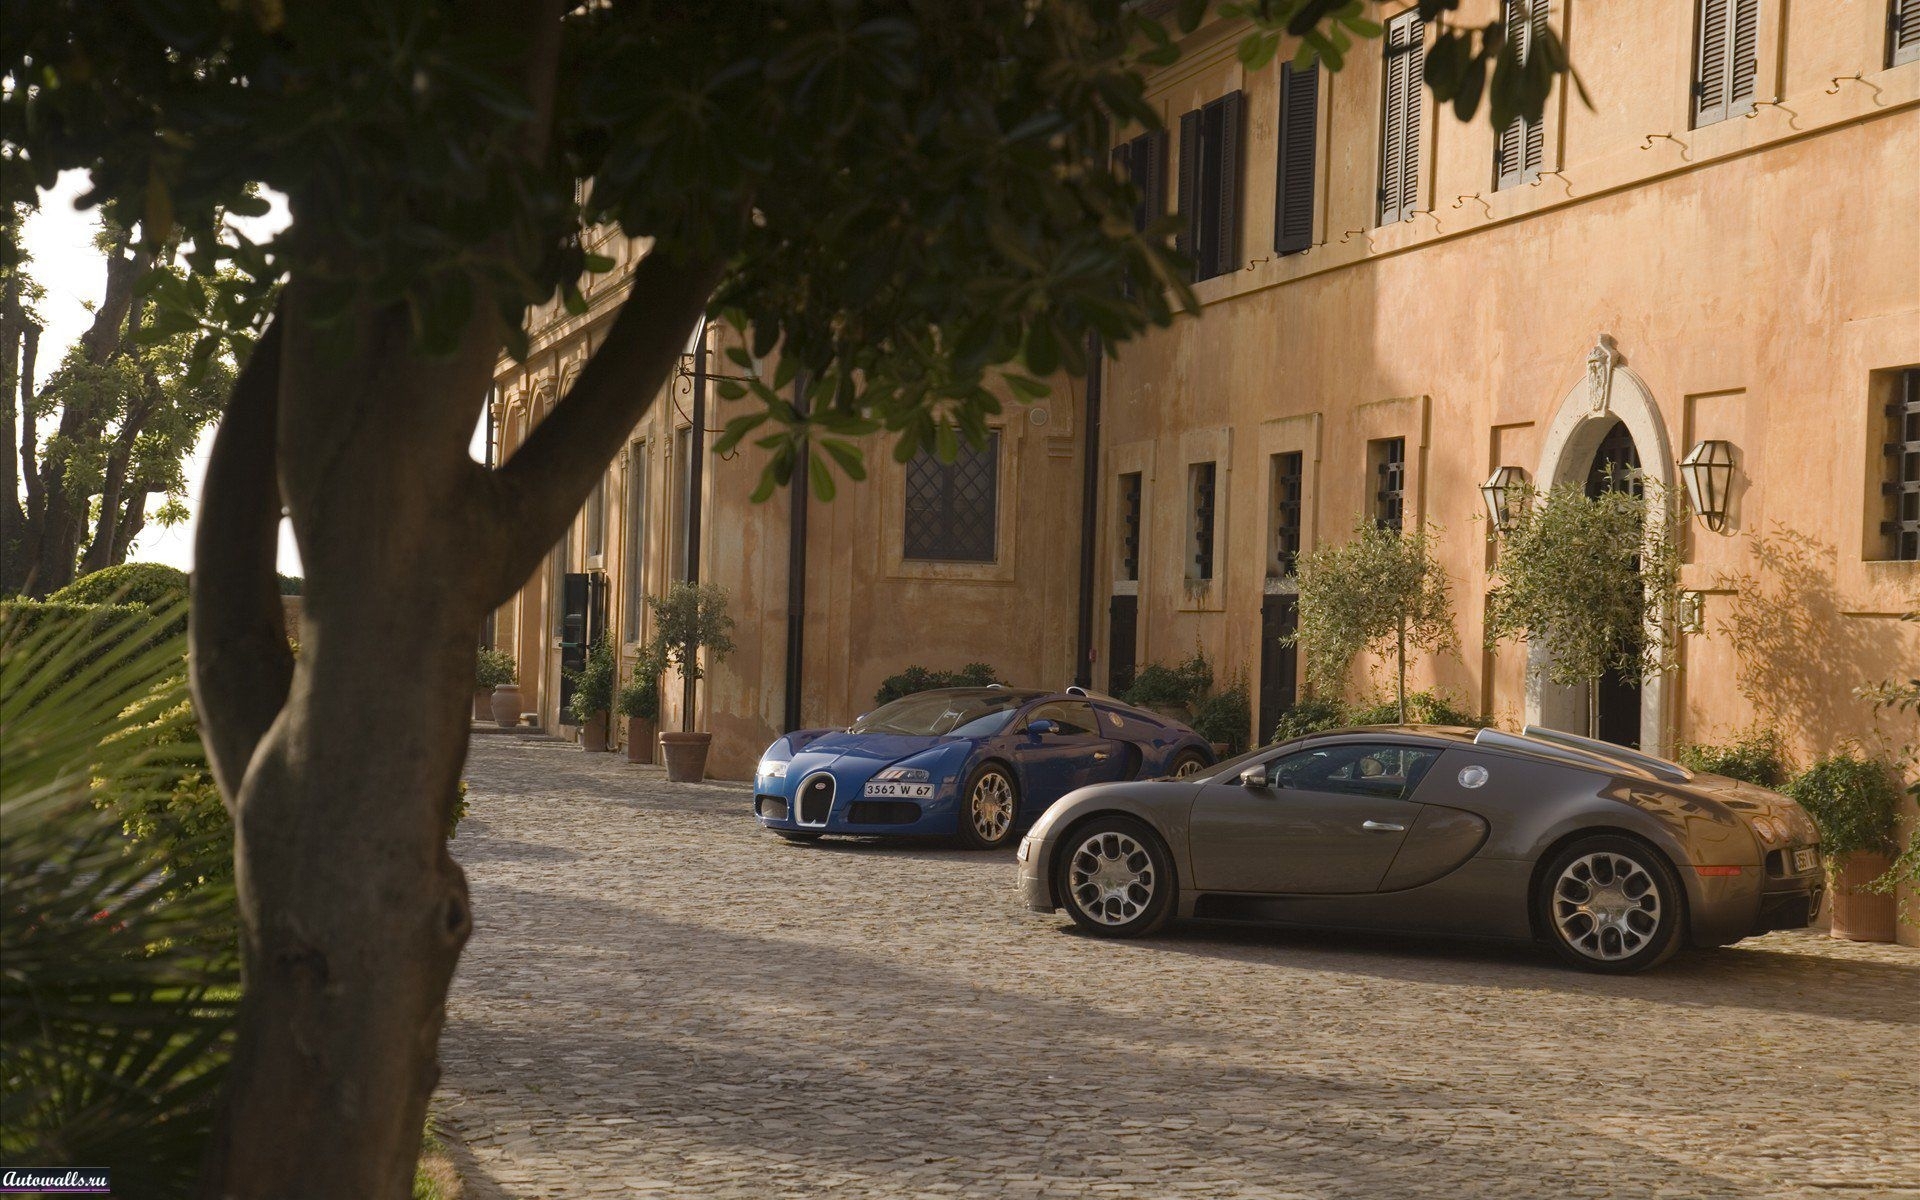 Скачать картинку Транспорт, Дома, Машины, Бугатти (Bugatti) в телефон бесплатно.